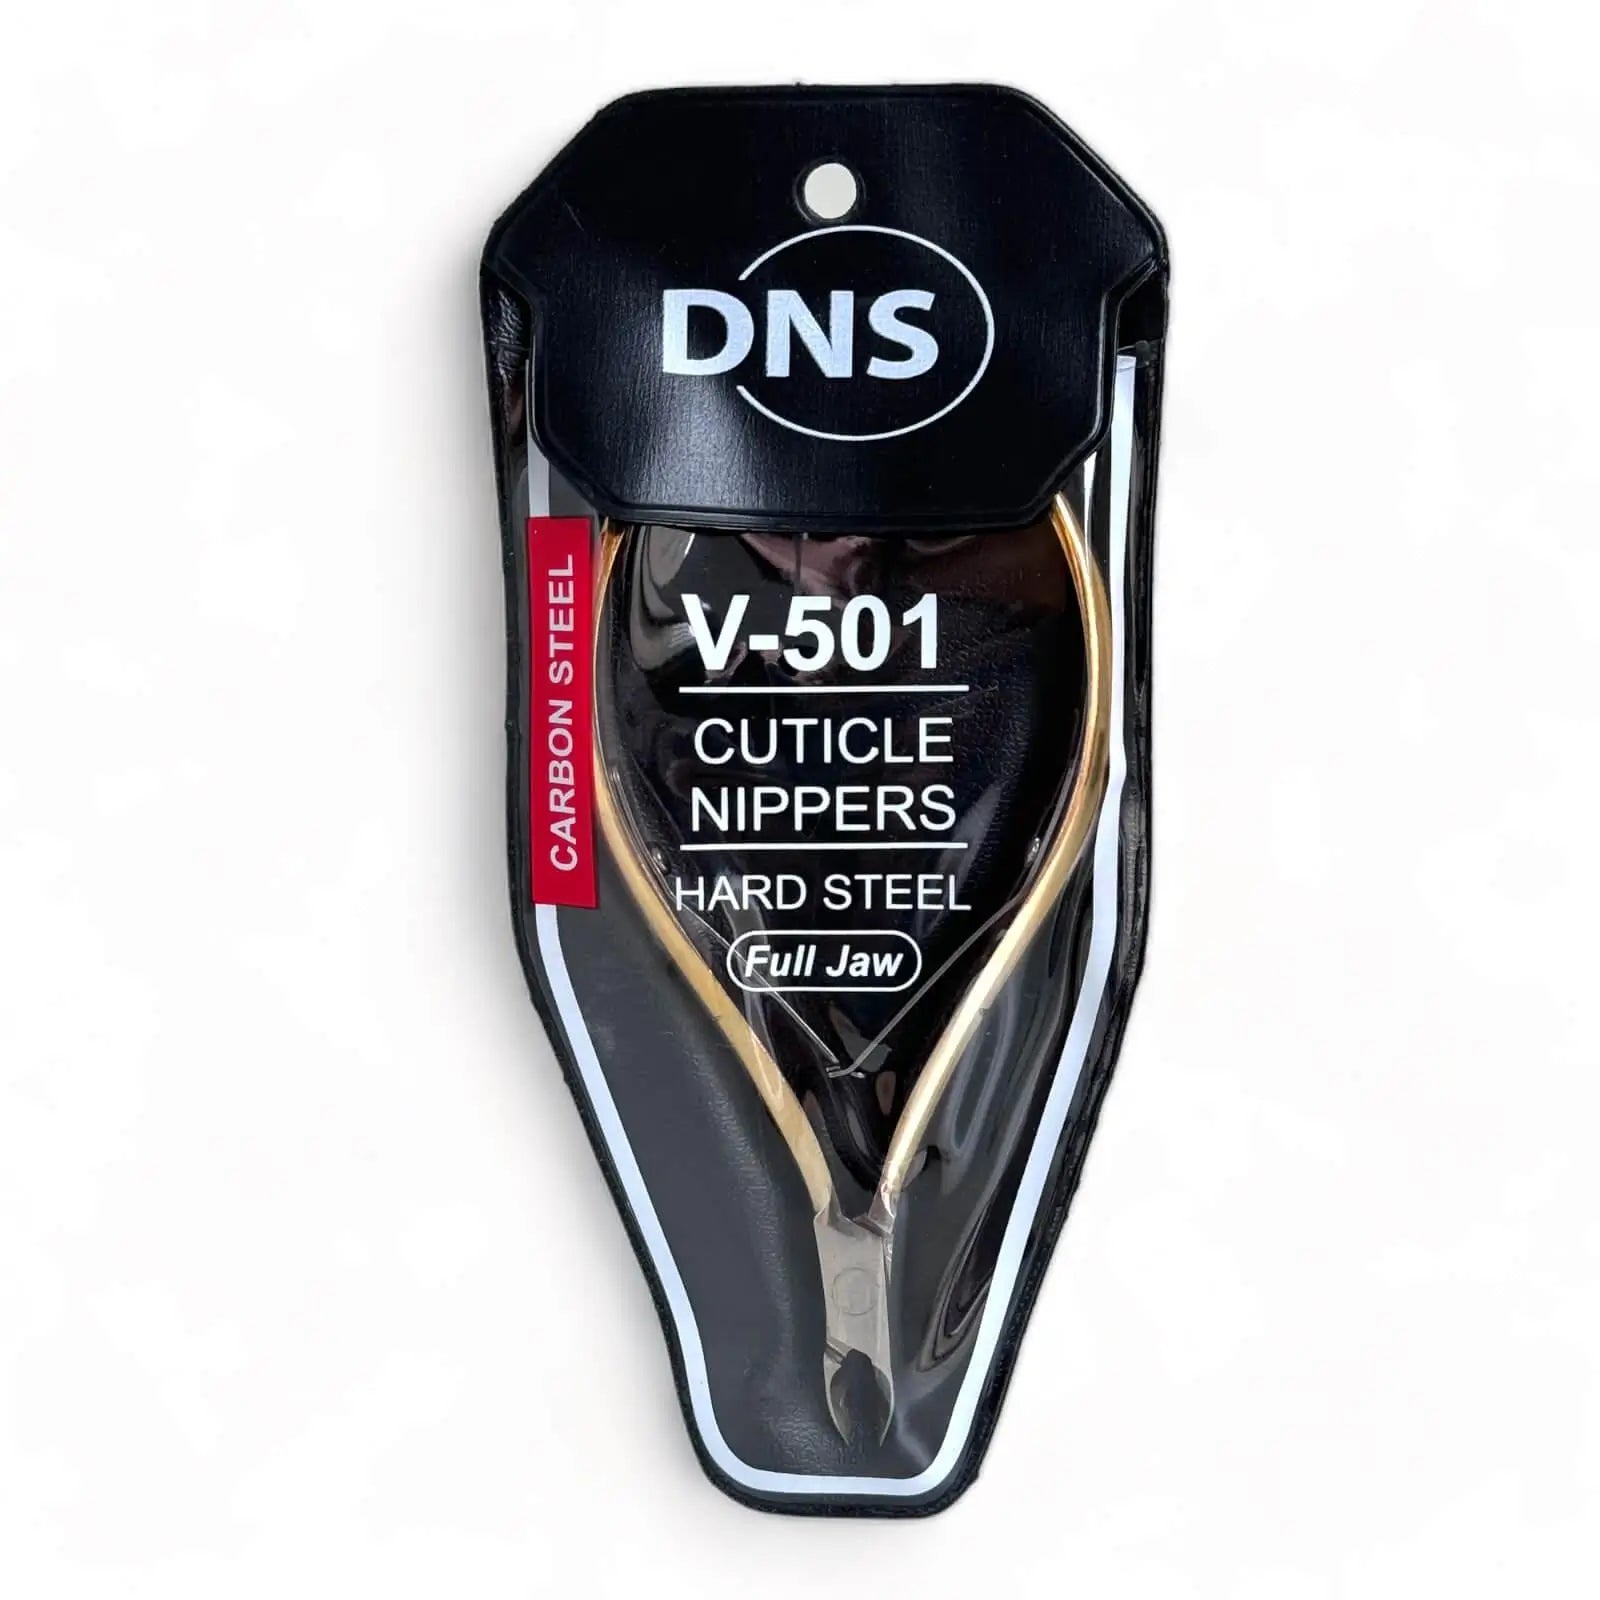 DNS Cuticle Nipper Hard Steel V501 Full Jaw